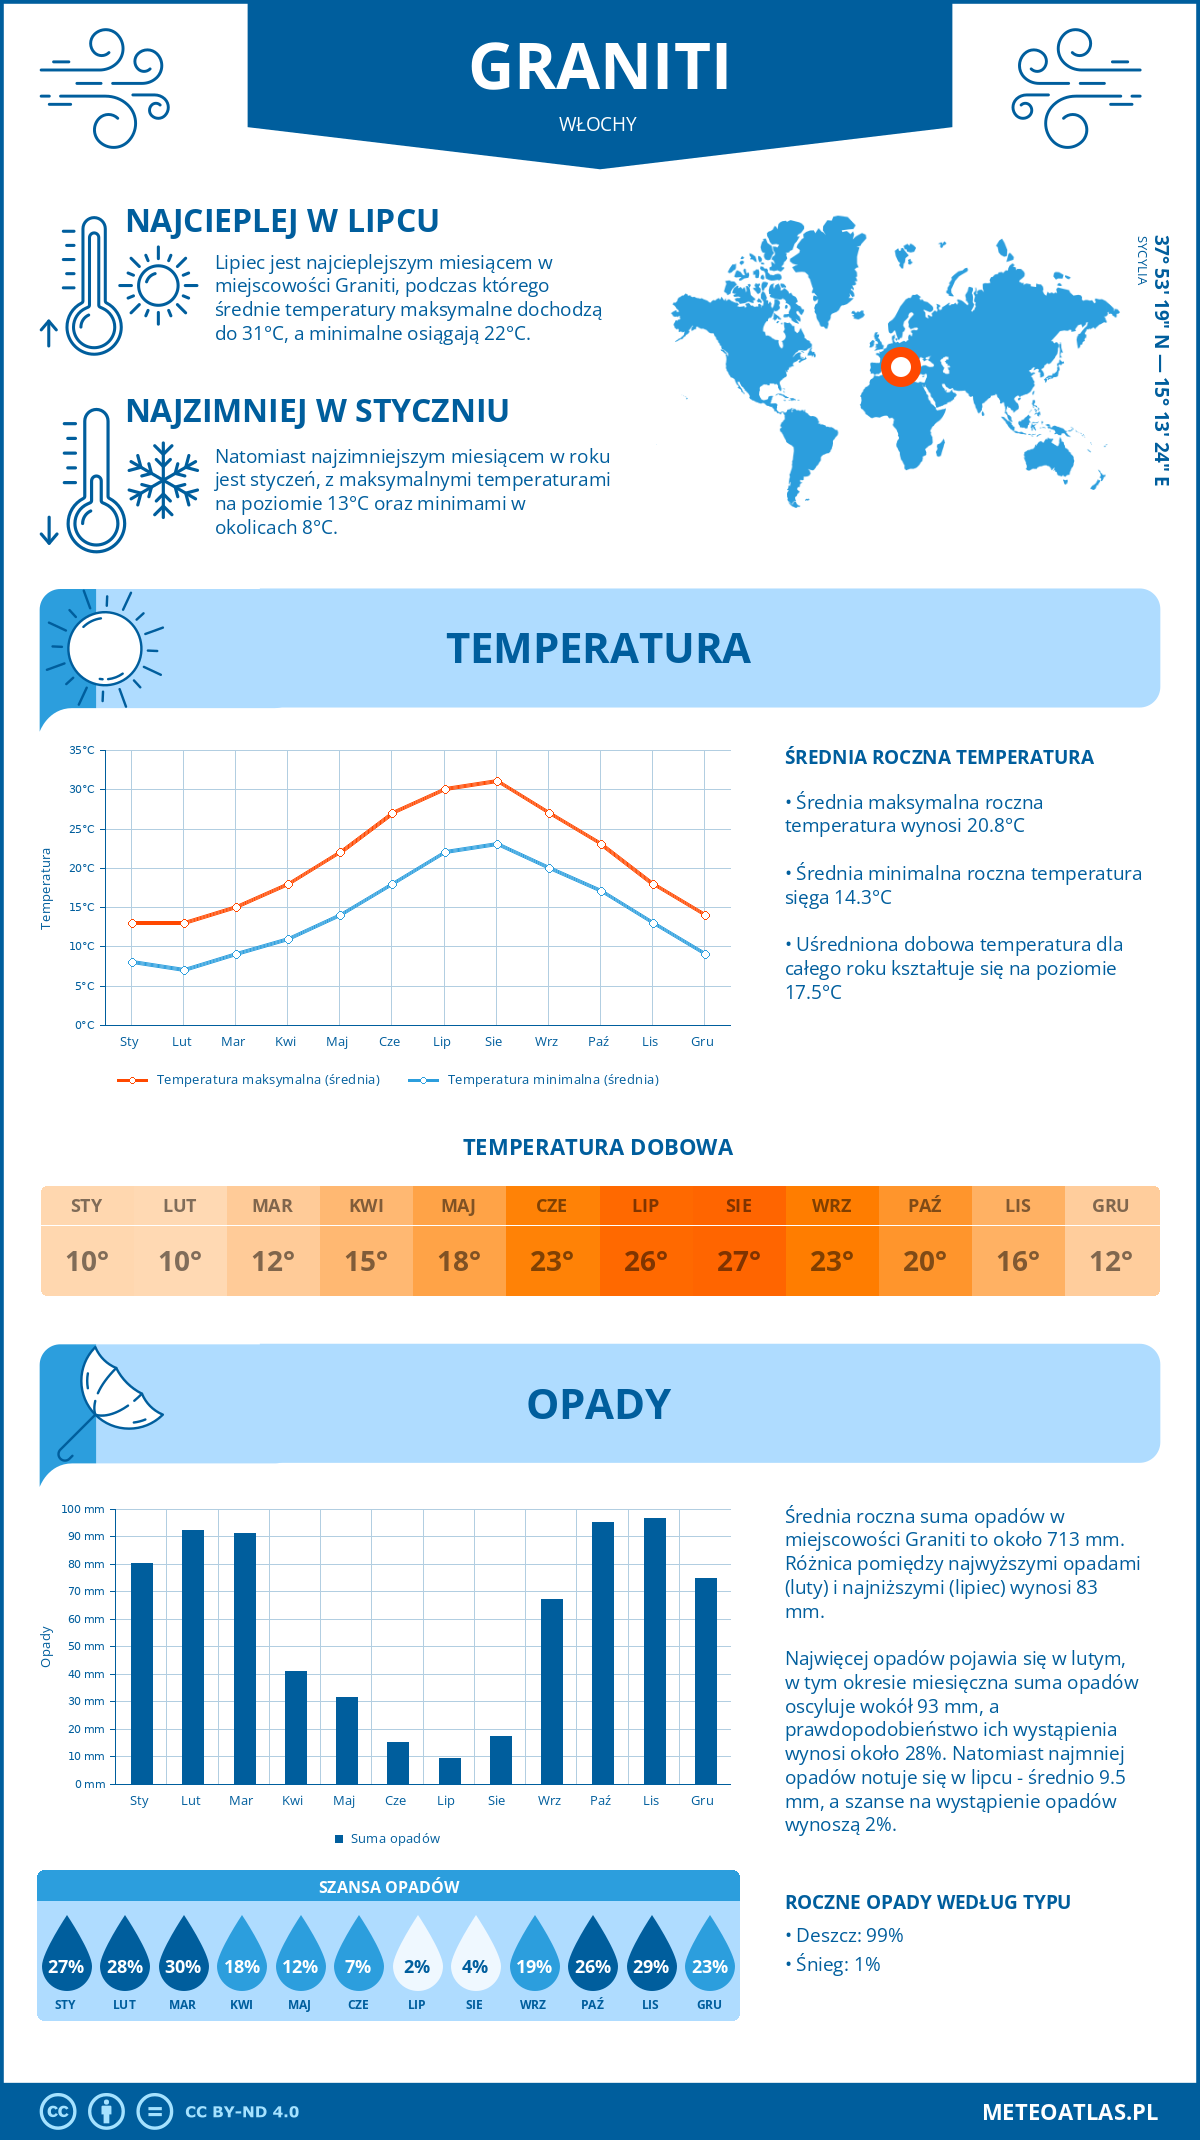 Pogoda Graniti (Włochy). Temperatura oraz opady.